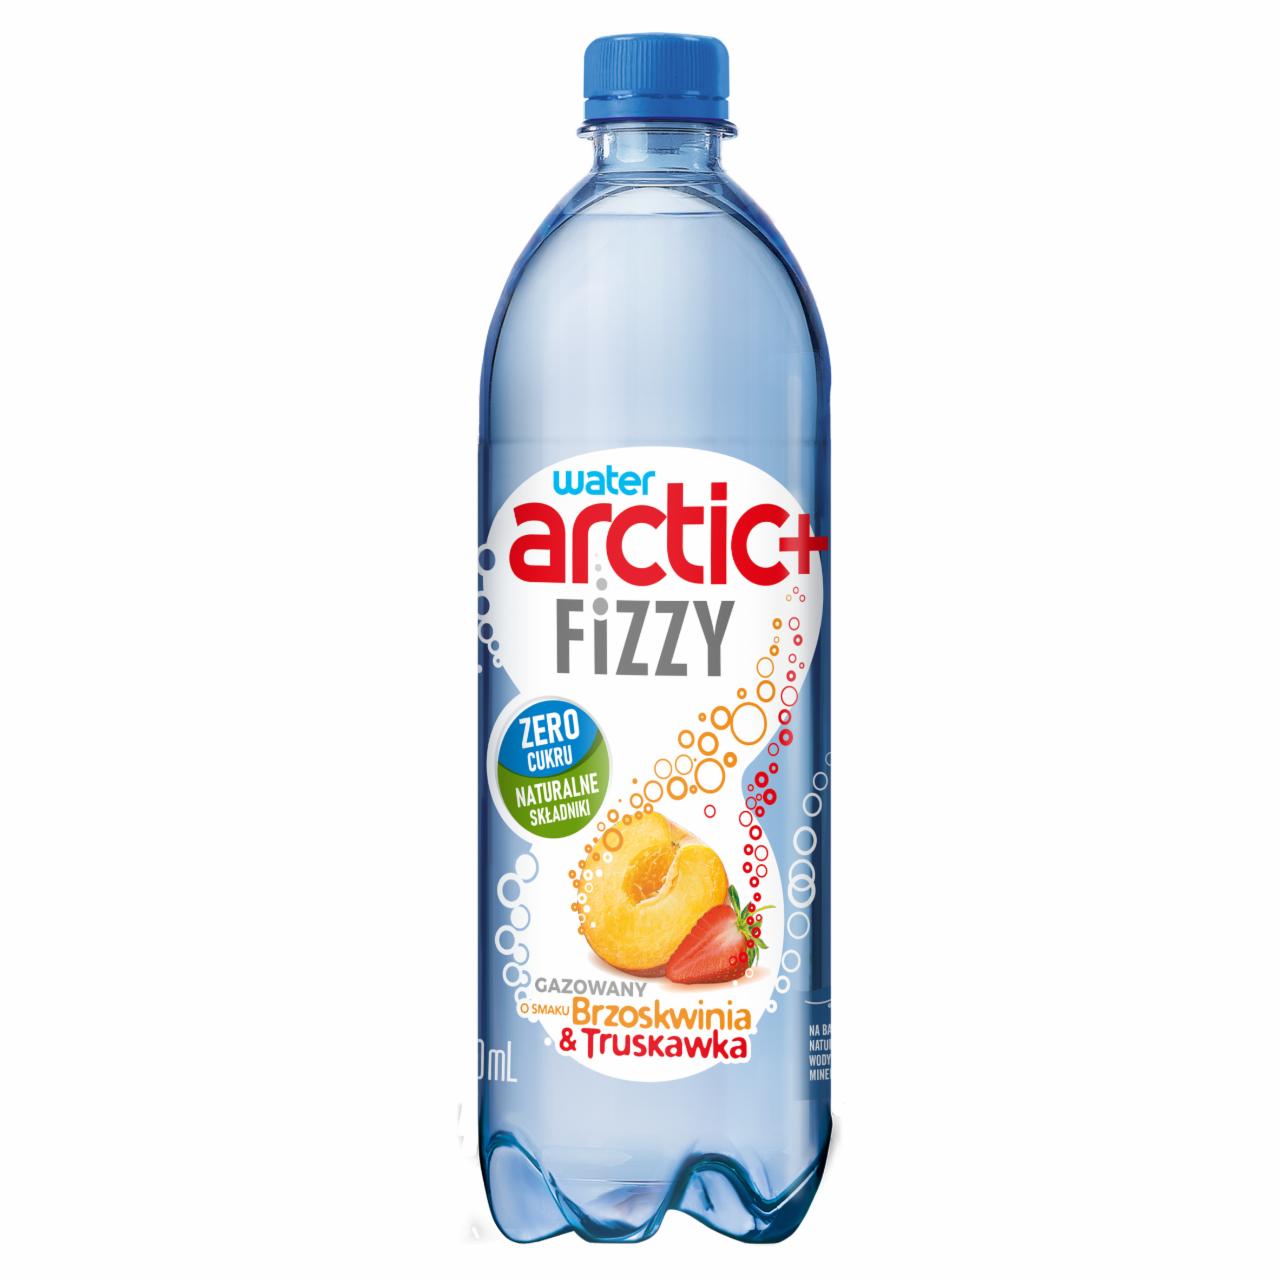 Zdjęcia - Arctic+ Fizzy Napój gazowany o smaku brzoskwinia & truskawka 750 ml